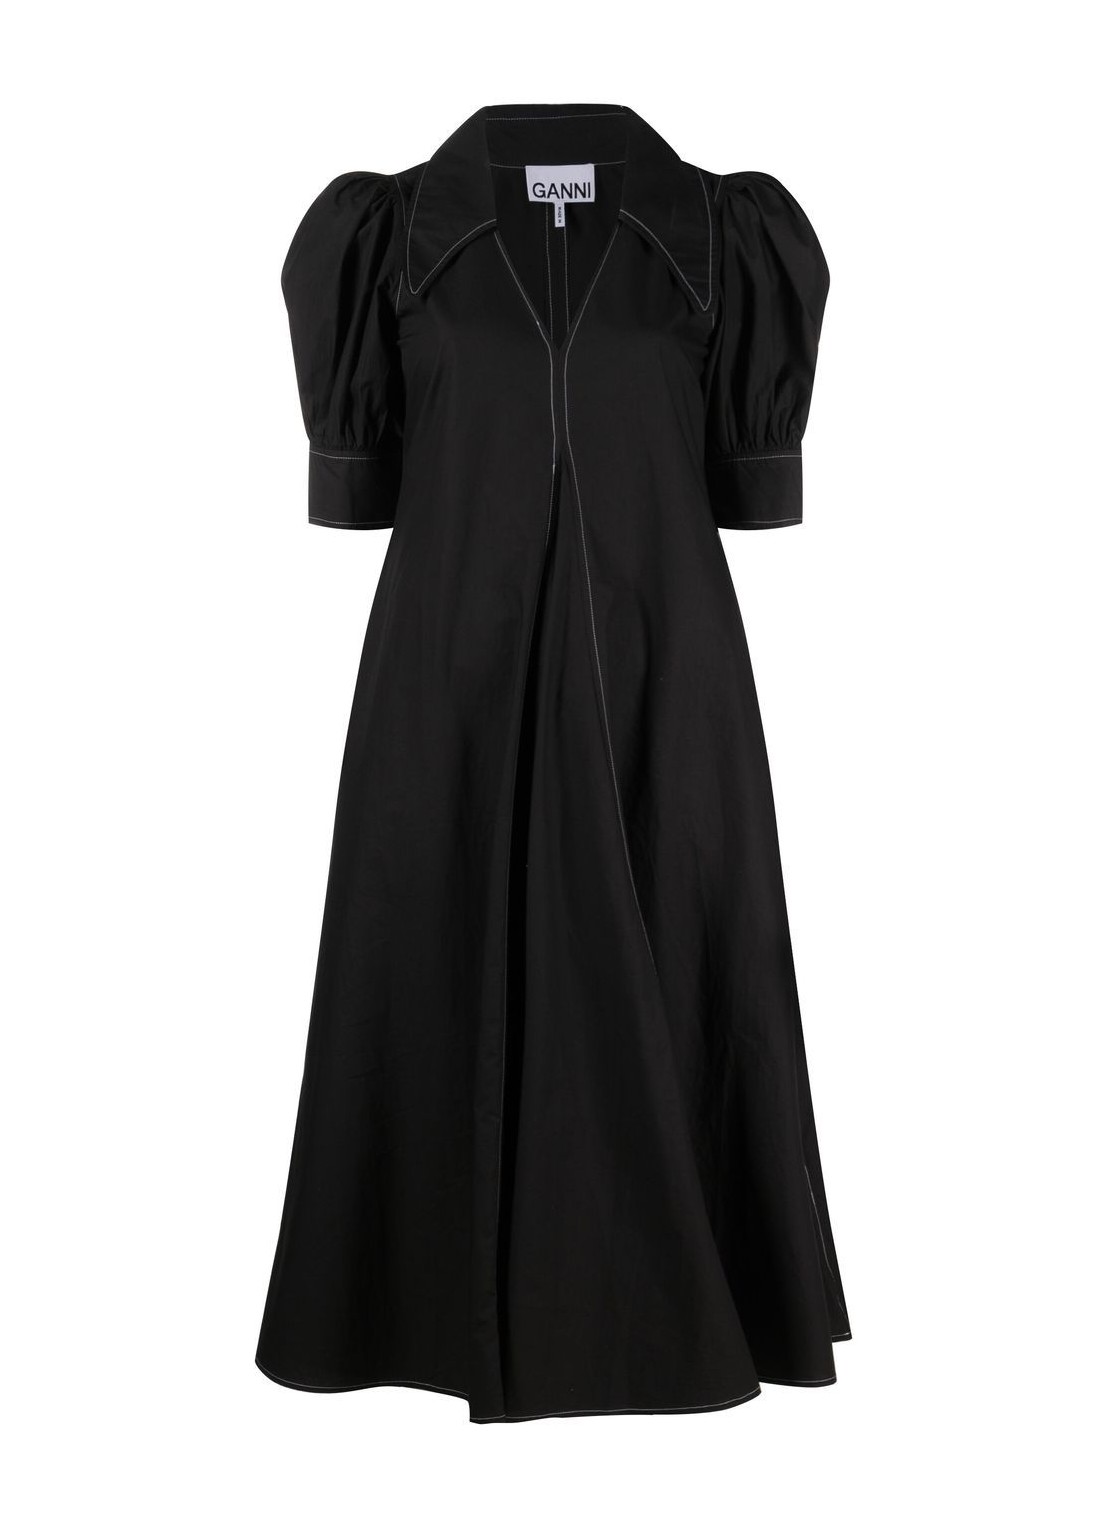 Vestido ganni dress woman cotton poplin v-neck maxi dress f7127 099 talla 38
 